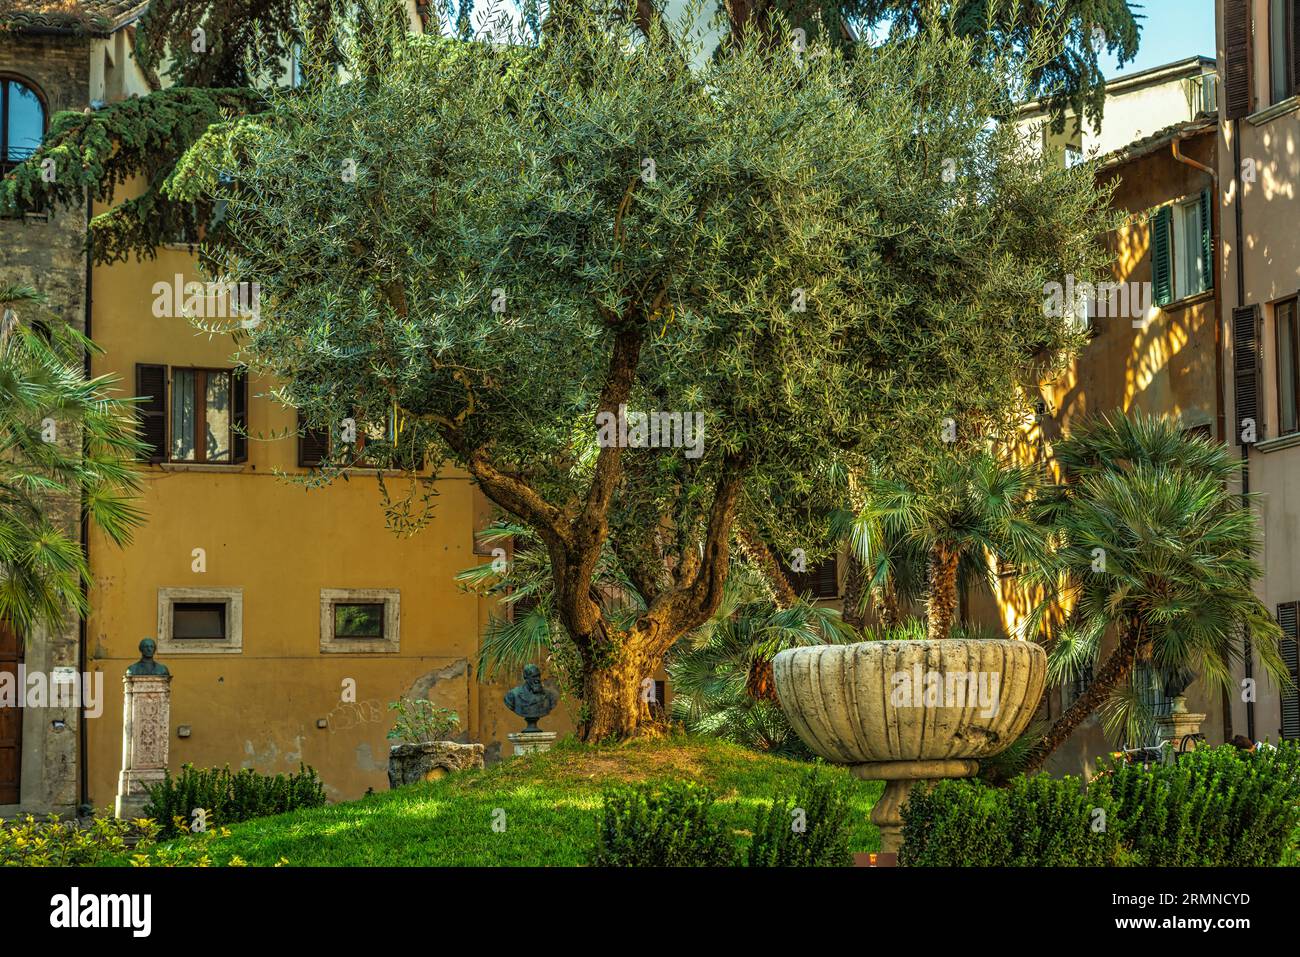 Olivo della specie oliva tenera ascolana. Il famoso alimento oliva Ascolana è prodotto da questa specie. Ascoli Piceno, regione Marche, Italia, Foto Stock